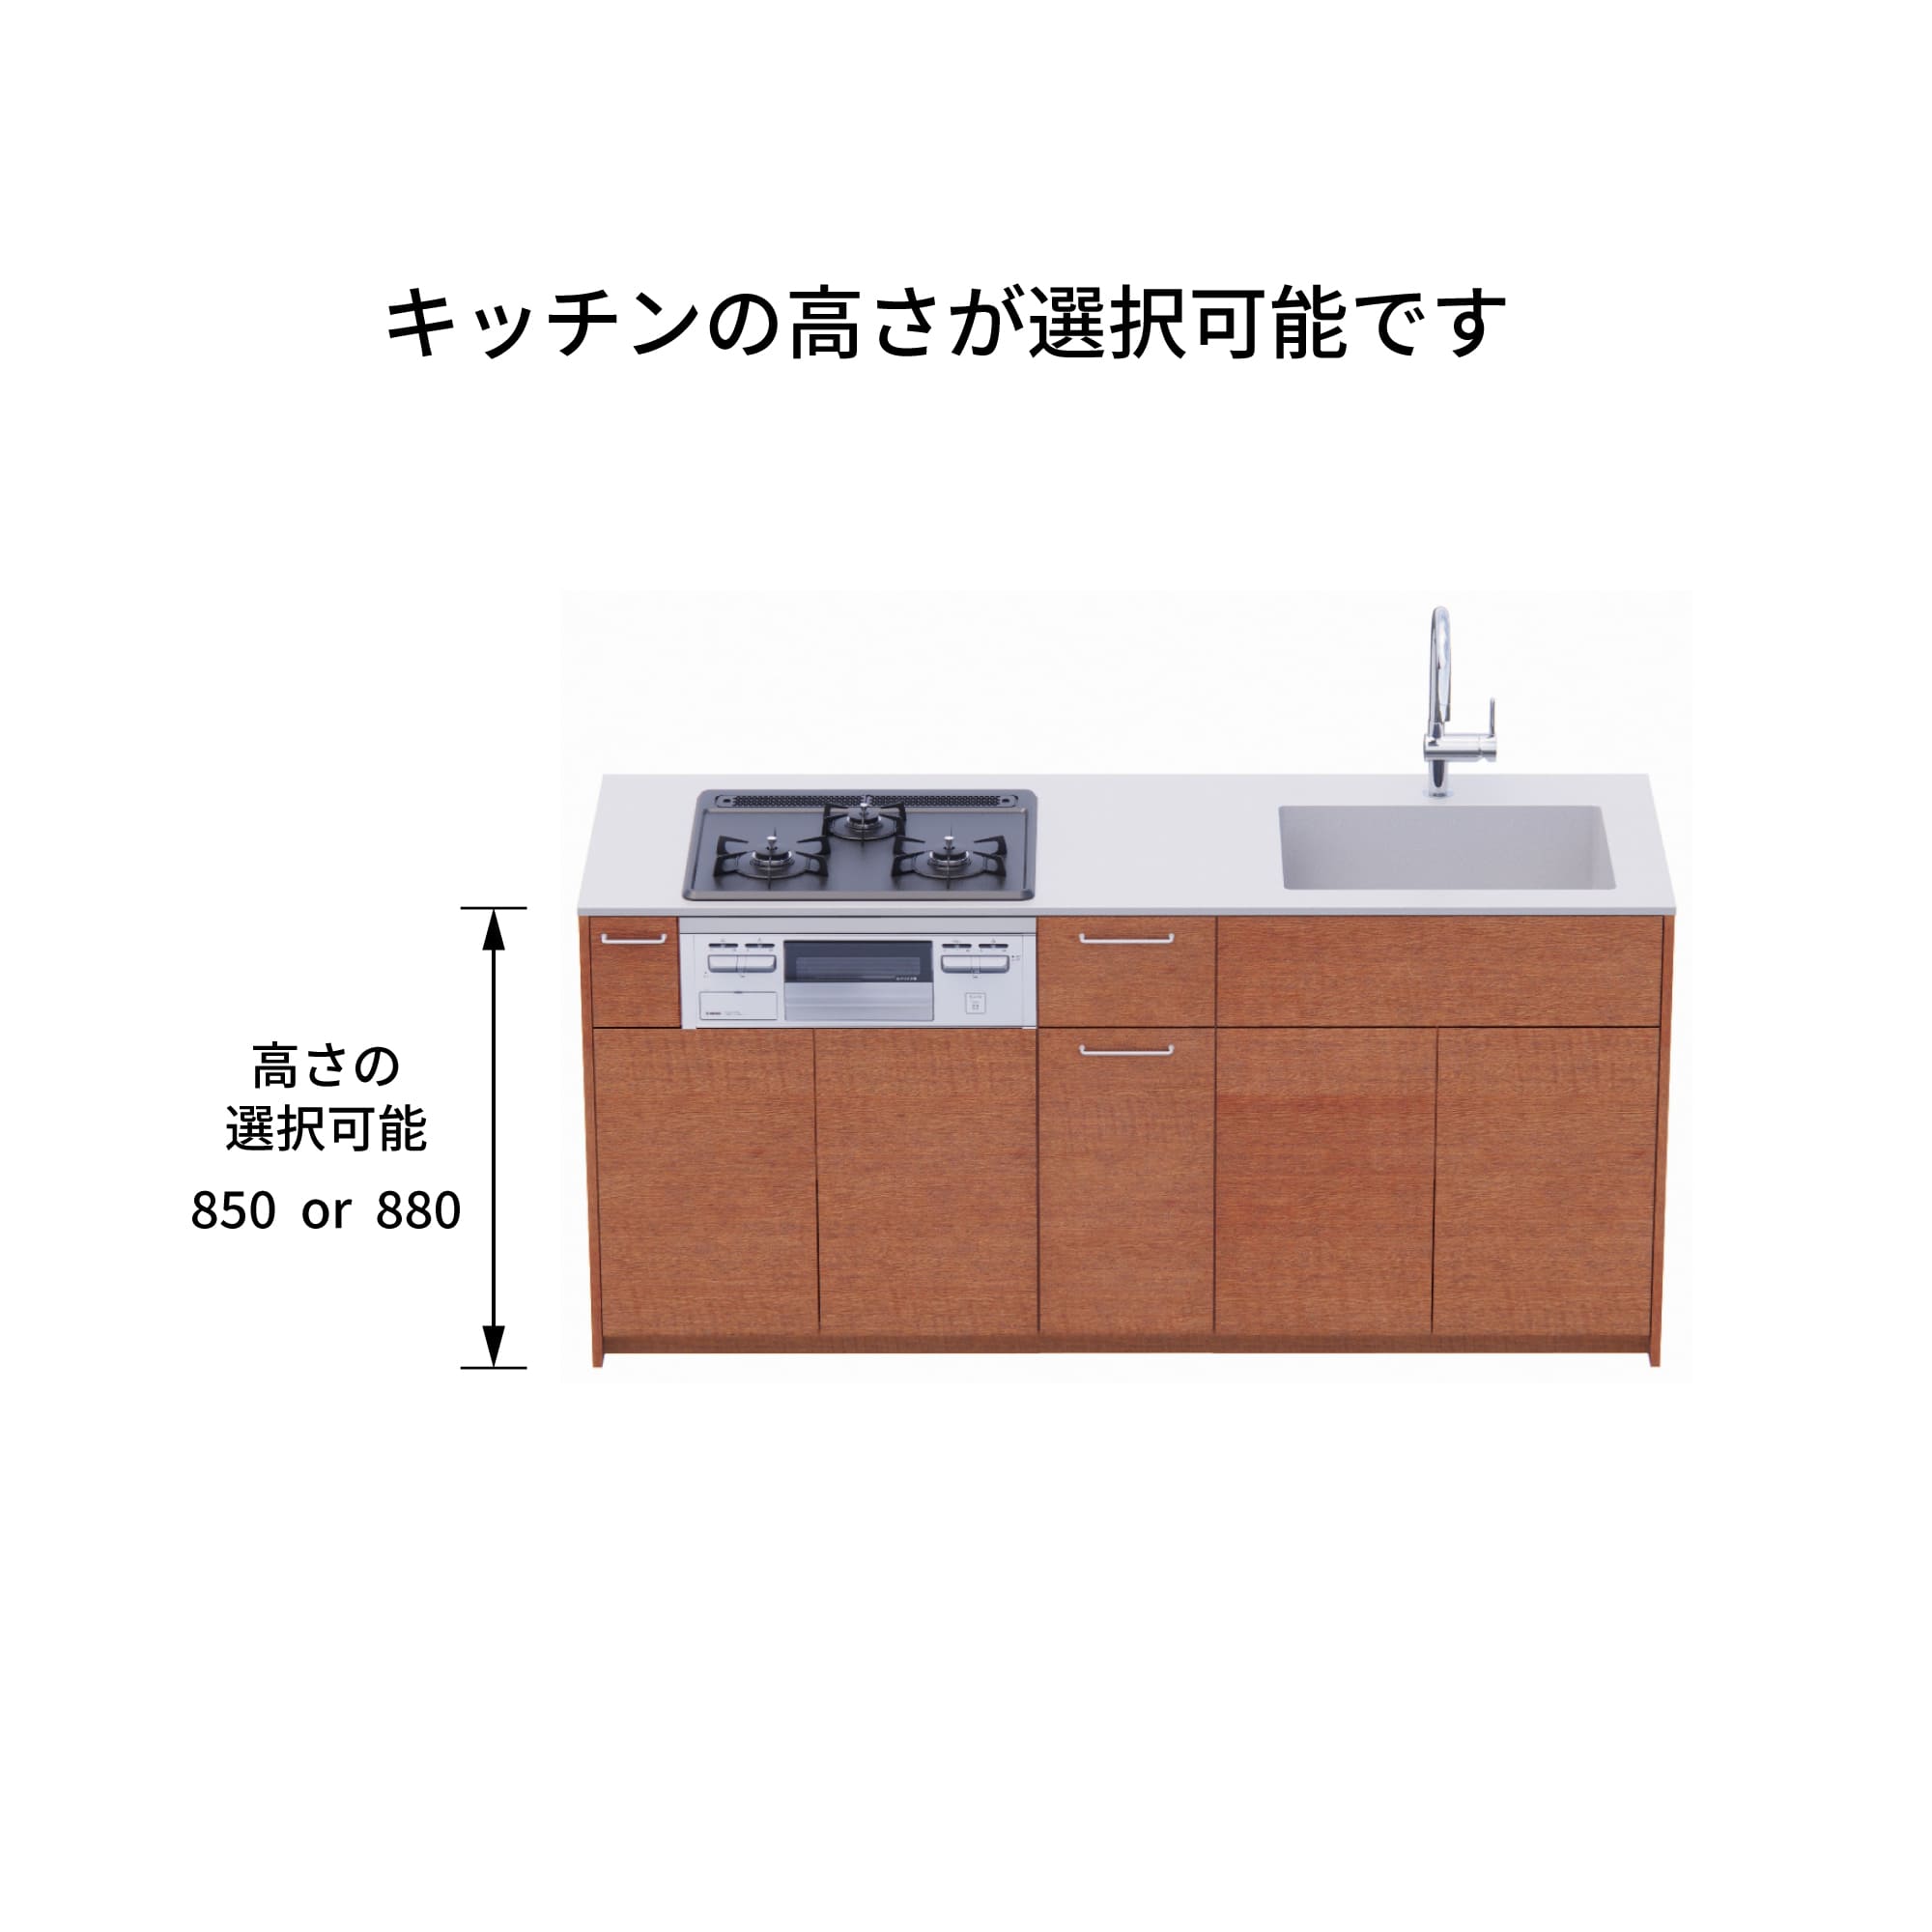 木製システムキッチン 対面型 W1990・コンロあり / オーブンなし / 食洗機あり KB-KC022-33-G183 キッチン高さを選択できます